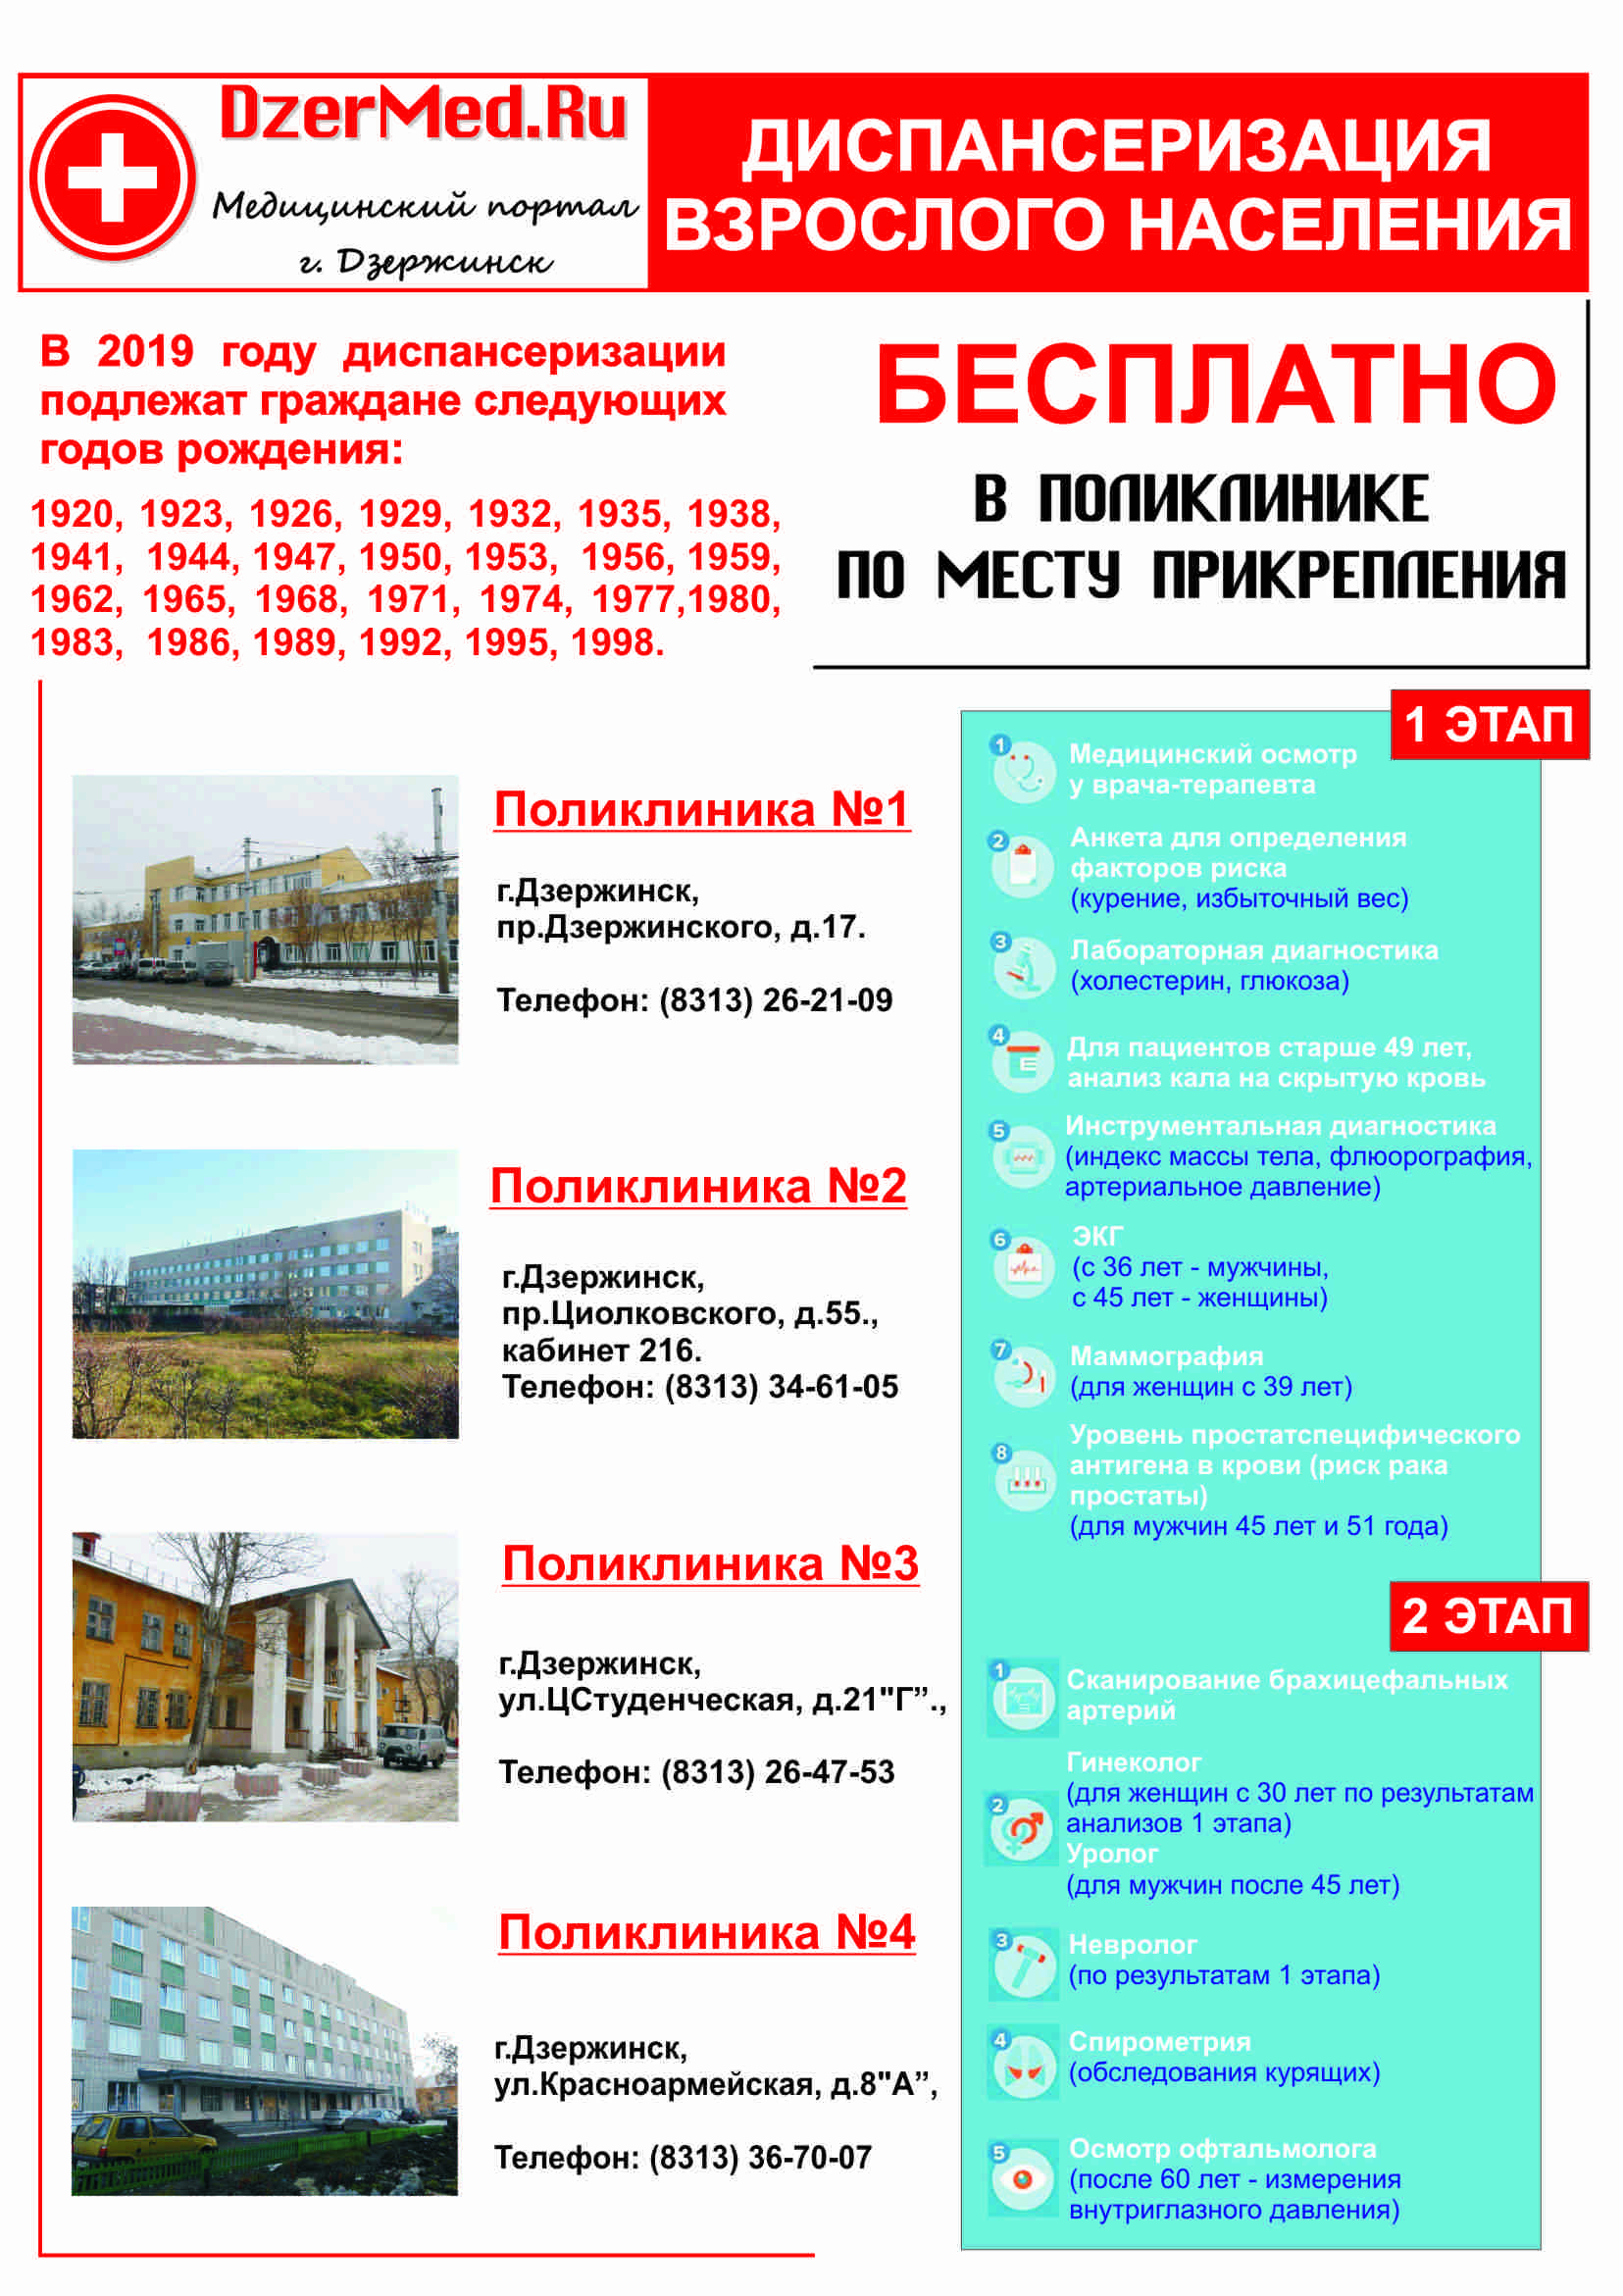 Диспансеризация населения в Дзержинске в 2019 году. Бесплатная по годам рождения.